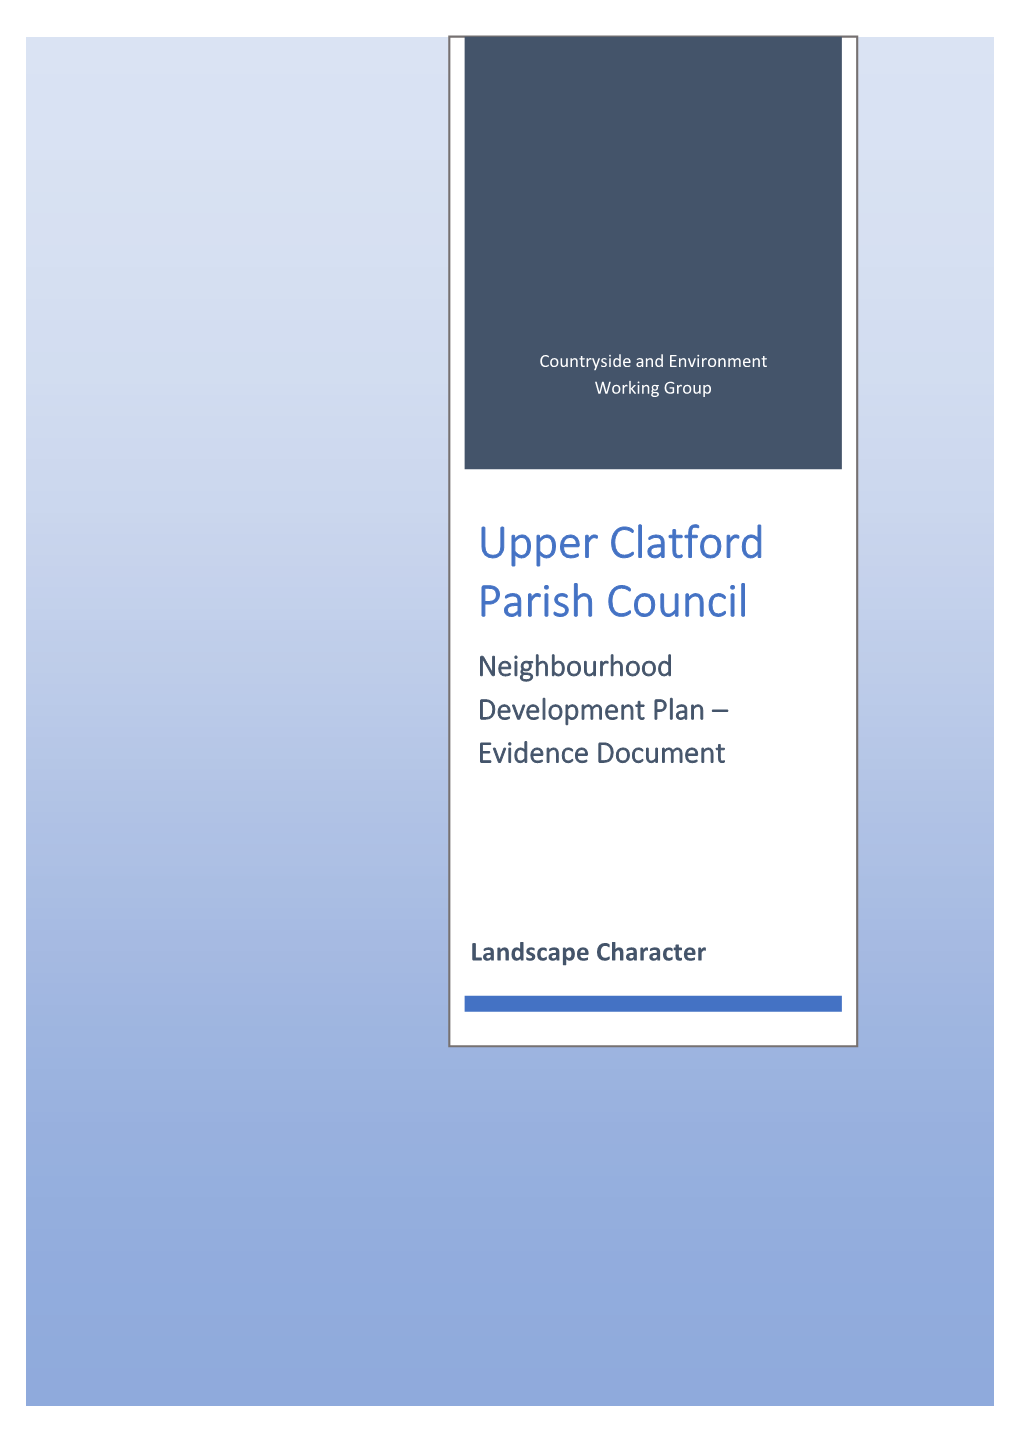 Upper Clatford Parish Council Neighbourhood Development Plan – Evidence Document